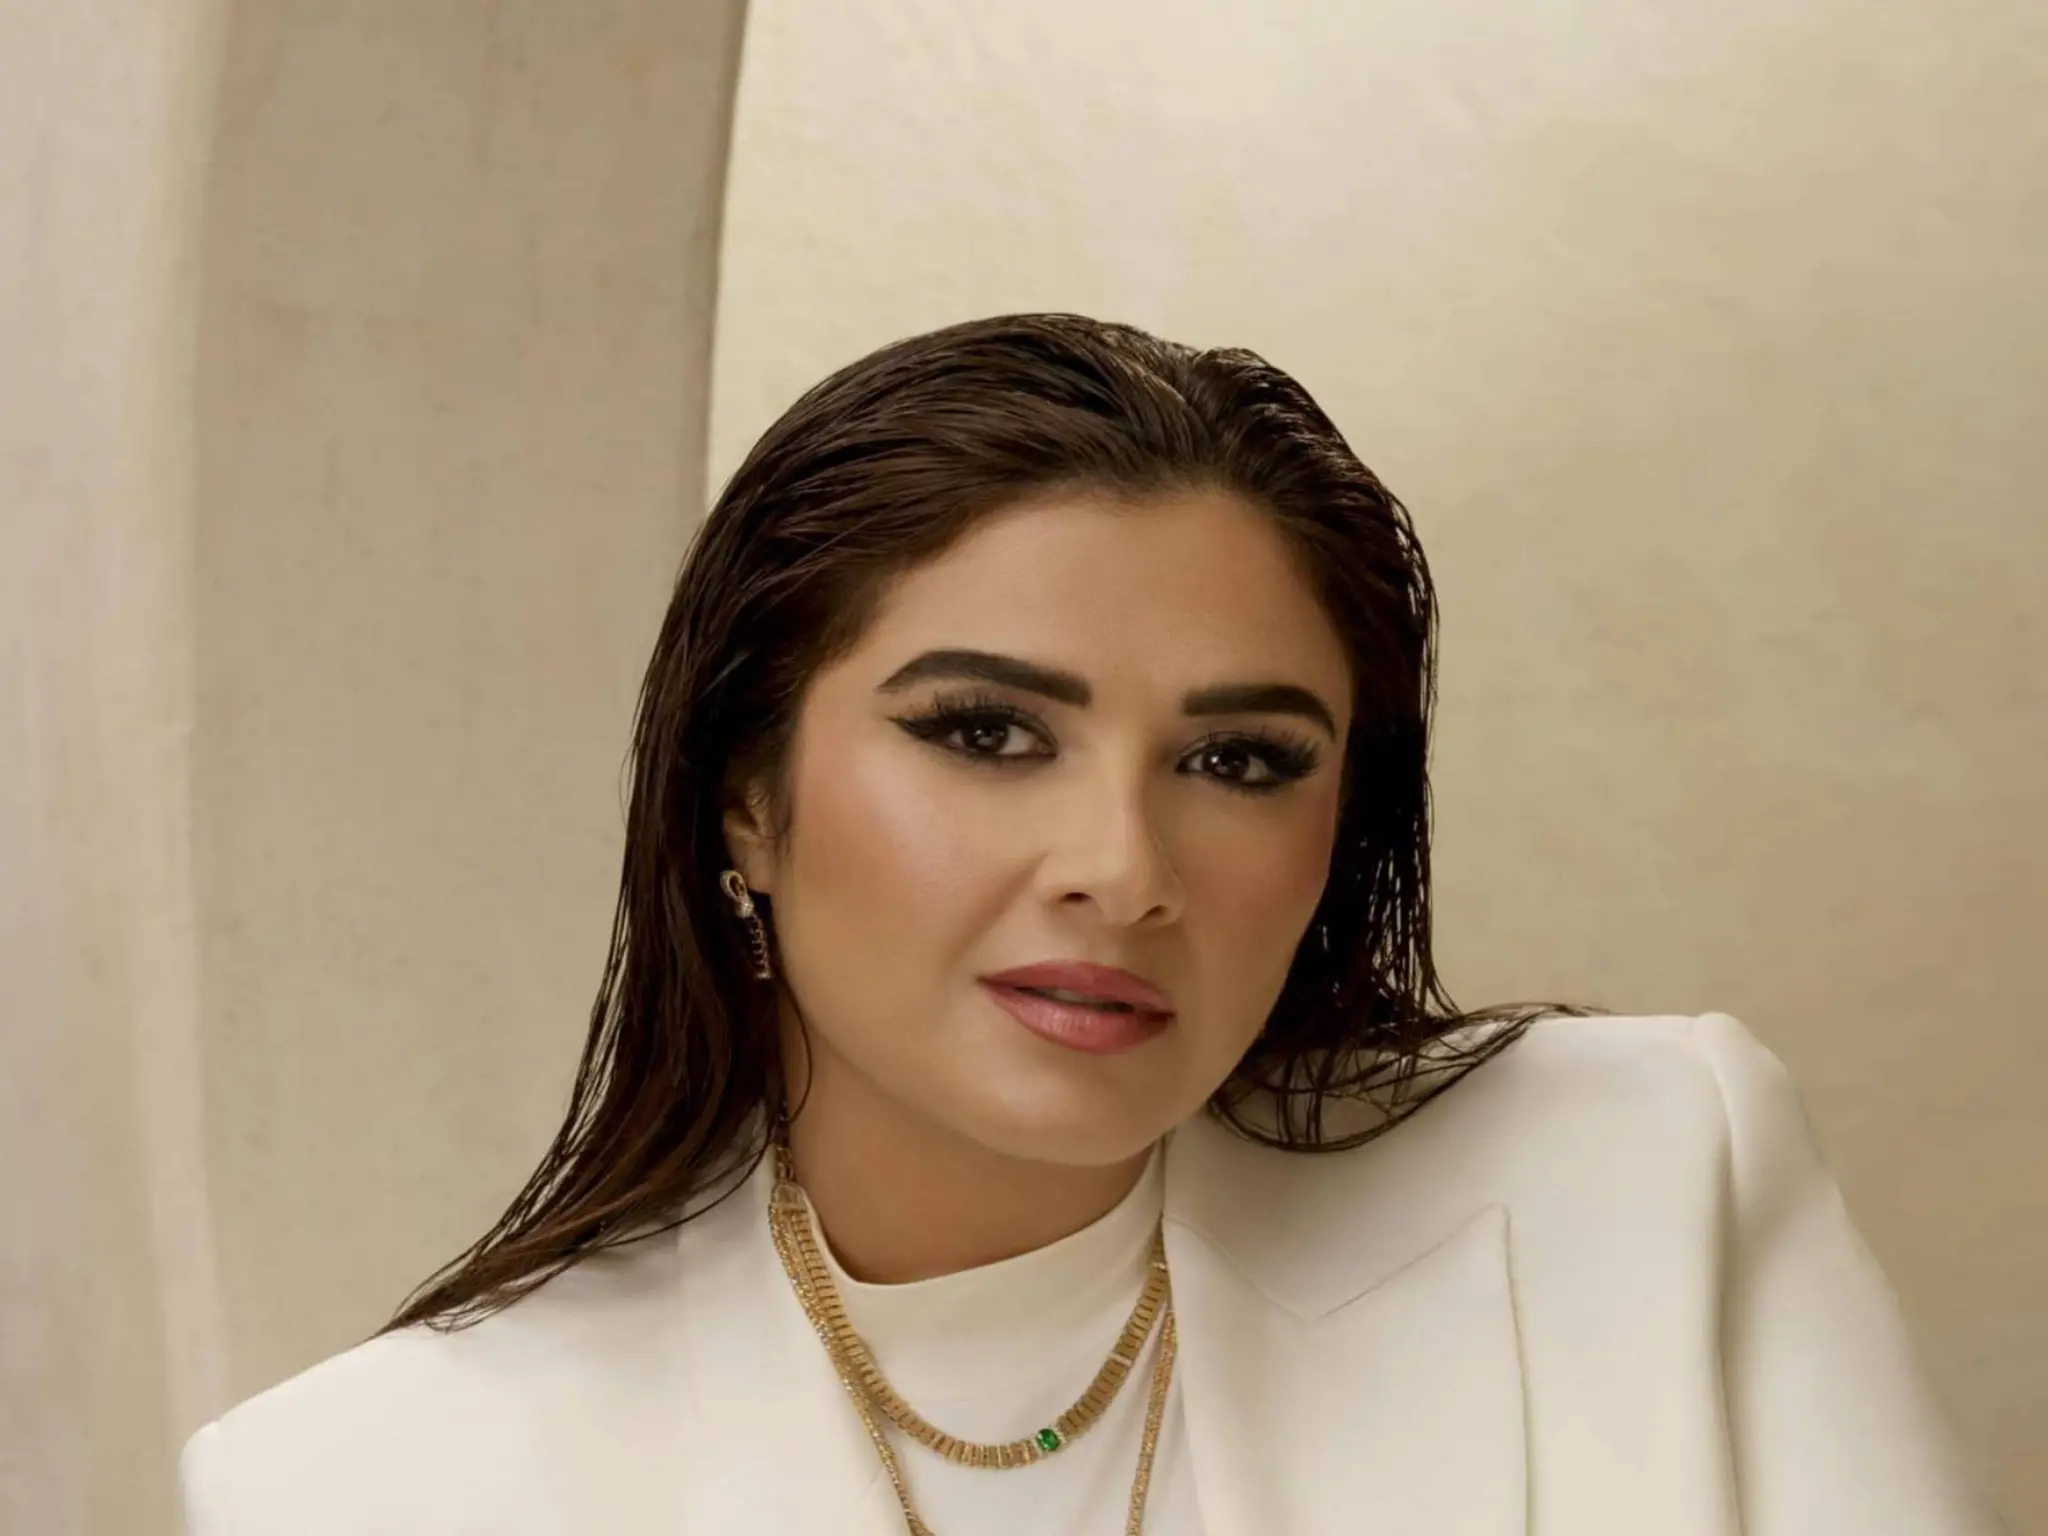 أول ظهور لـ "ياسمين عبد العزيز" بعد انفصالها رسمياً عن زوجها "أحمد العوضي"